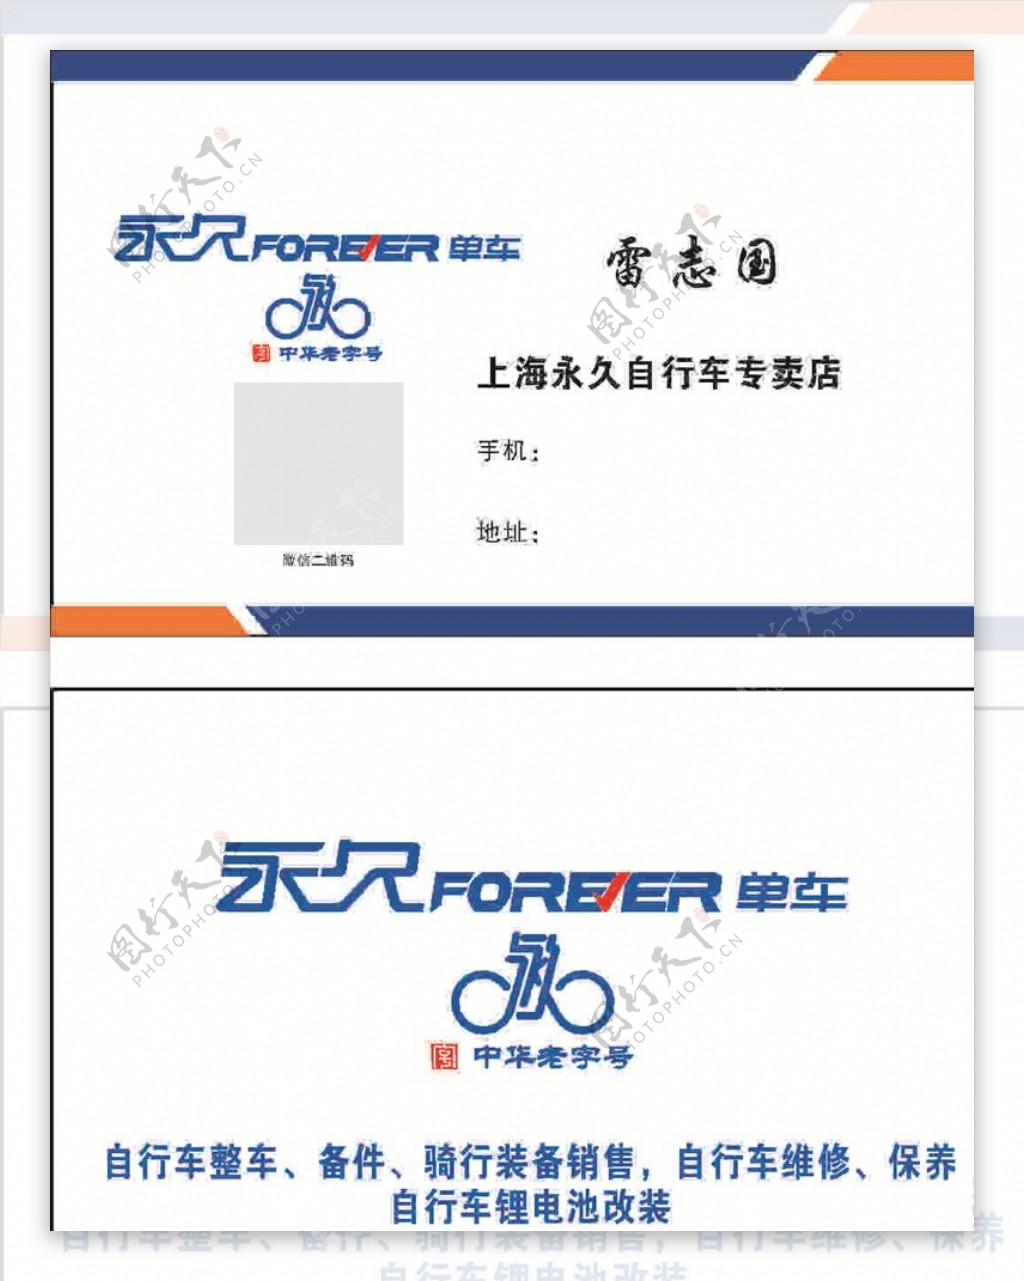 上海永久自行车名片